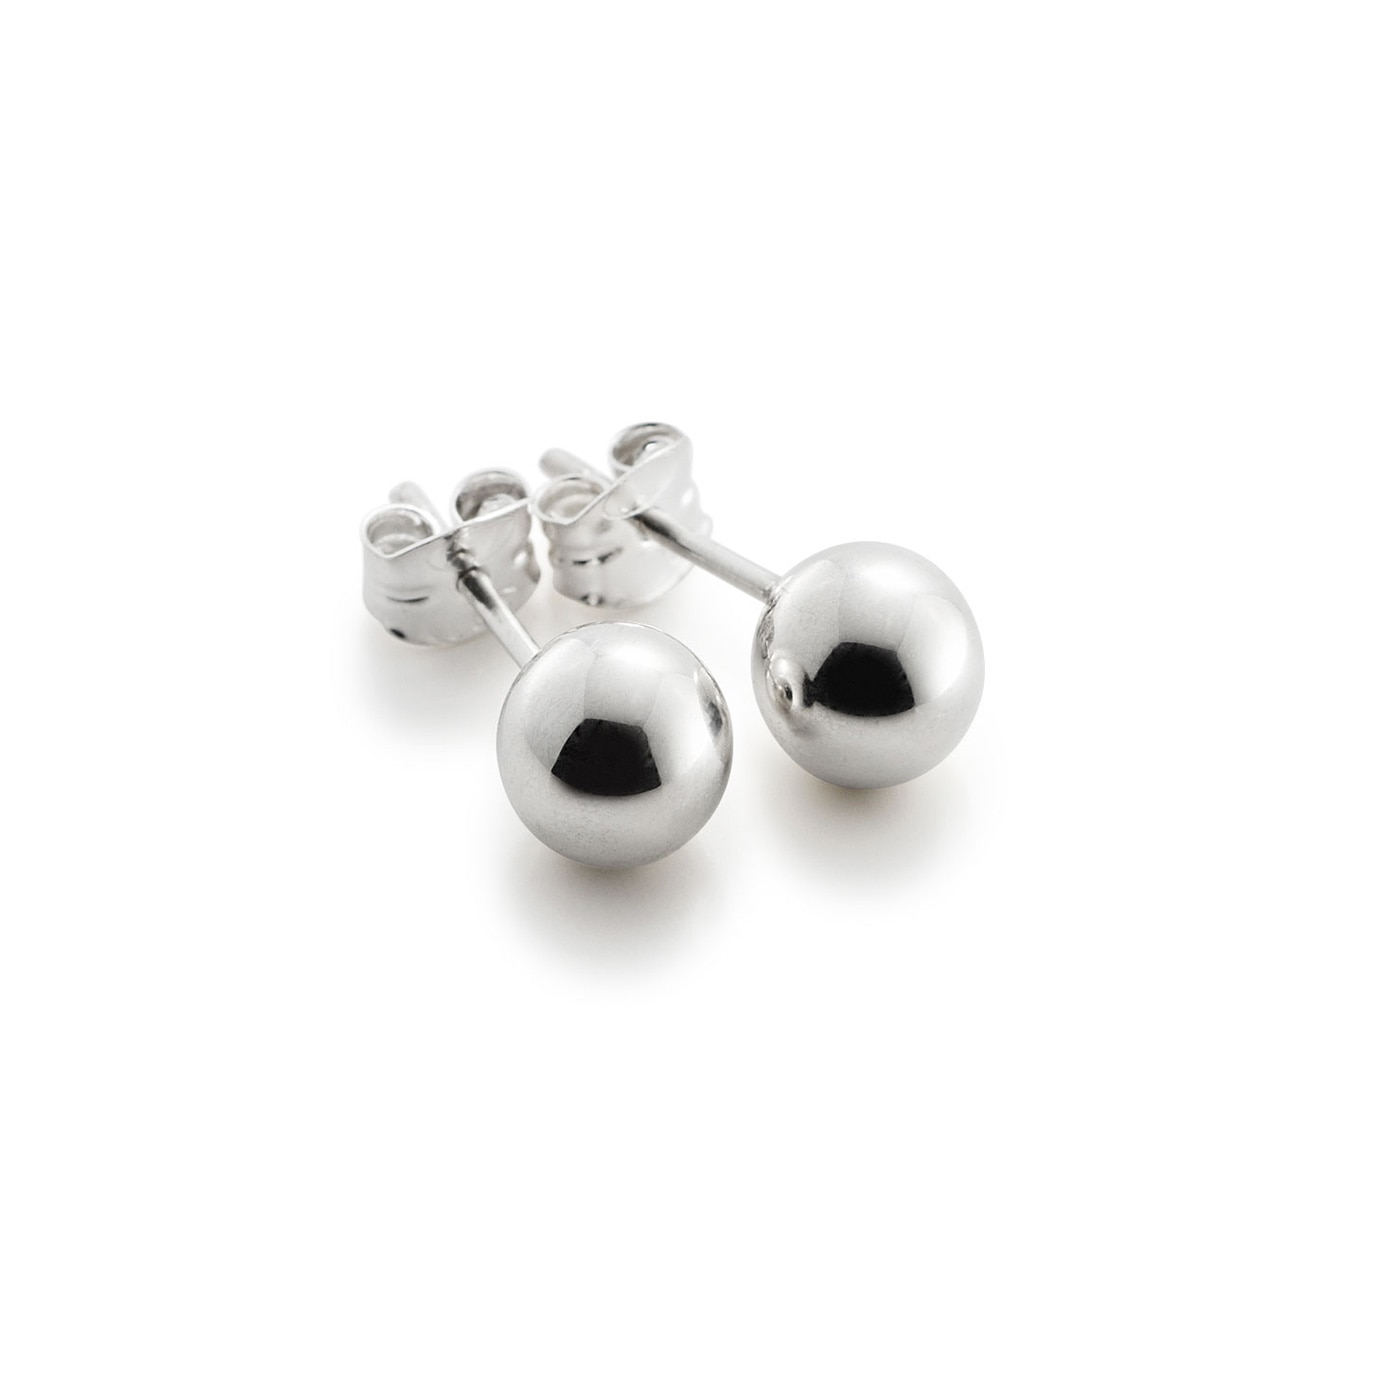 Halo earrings 5 mm               